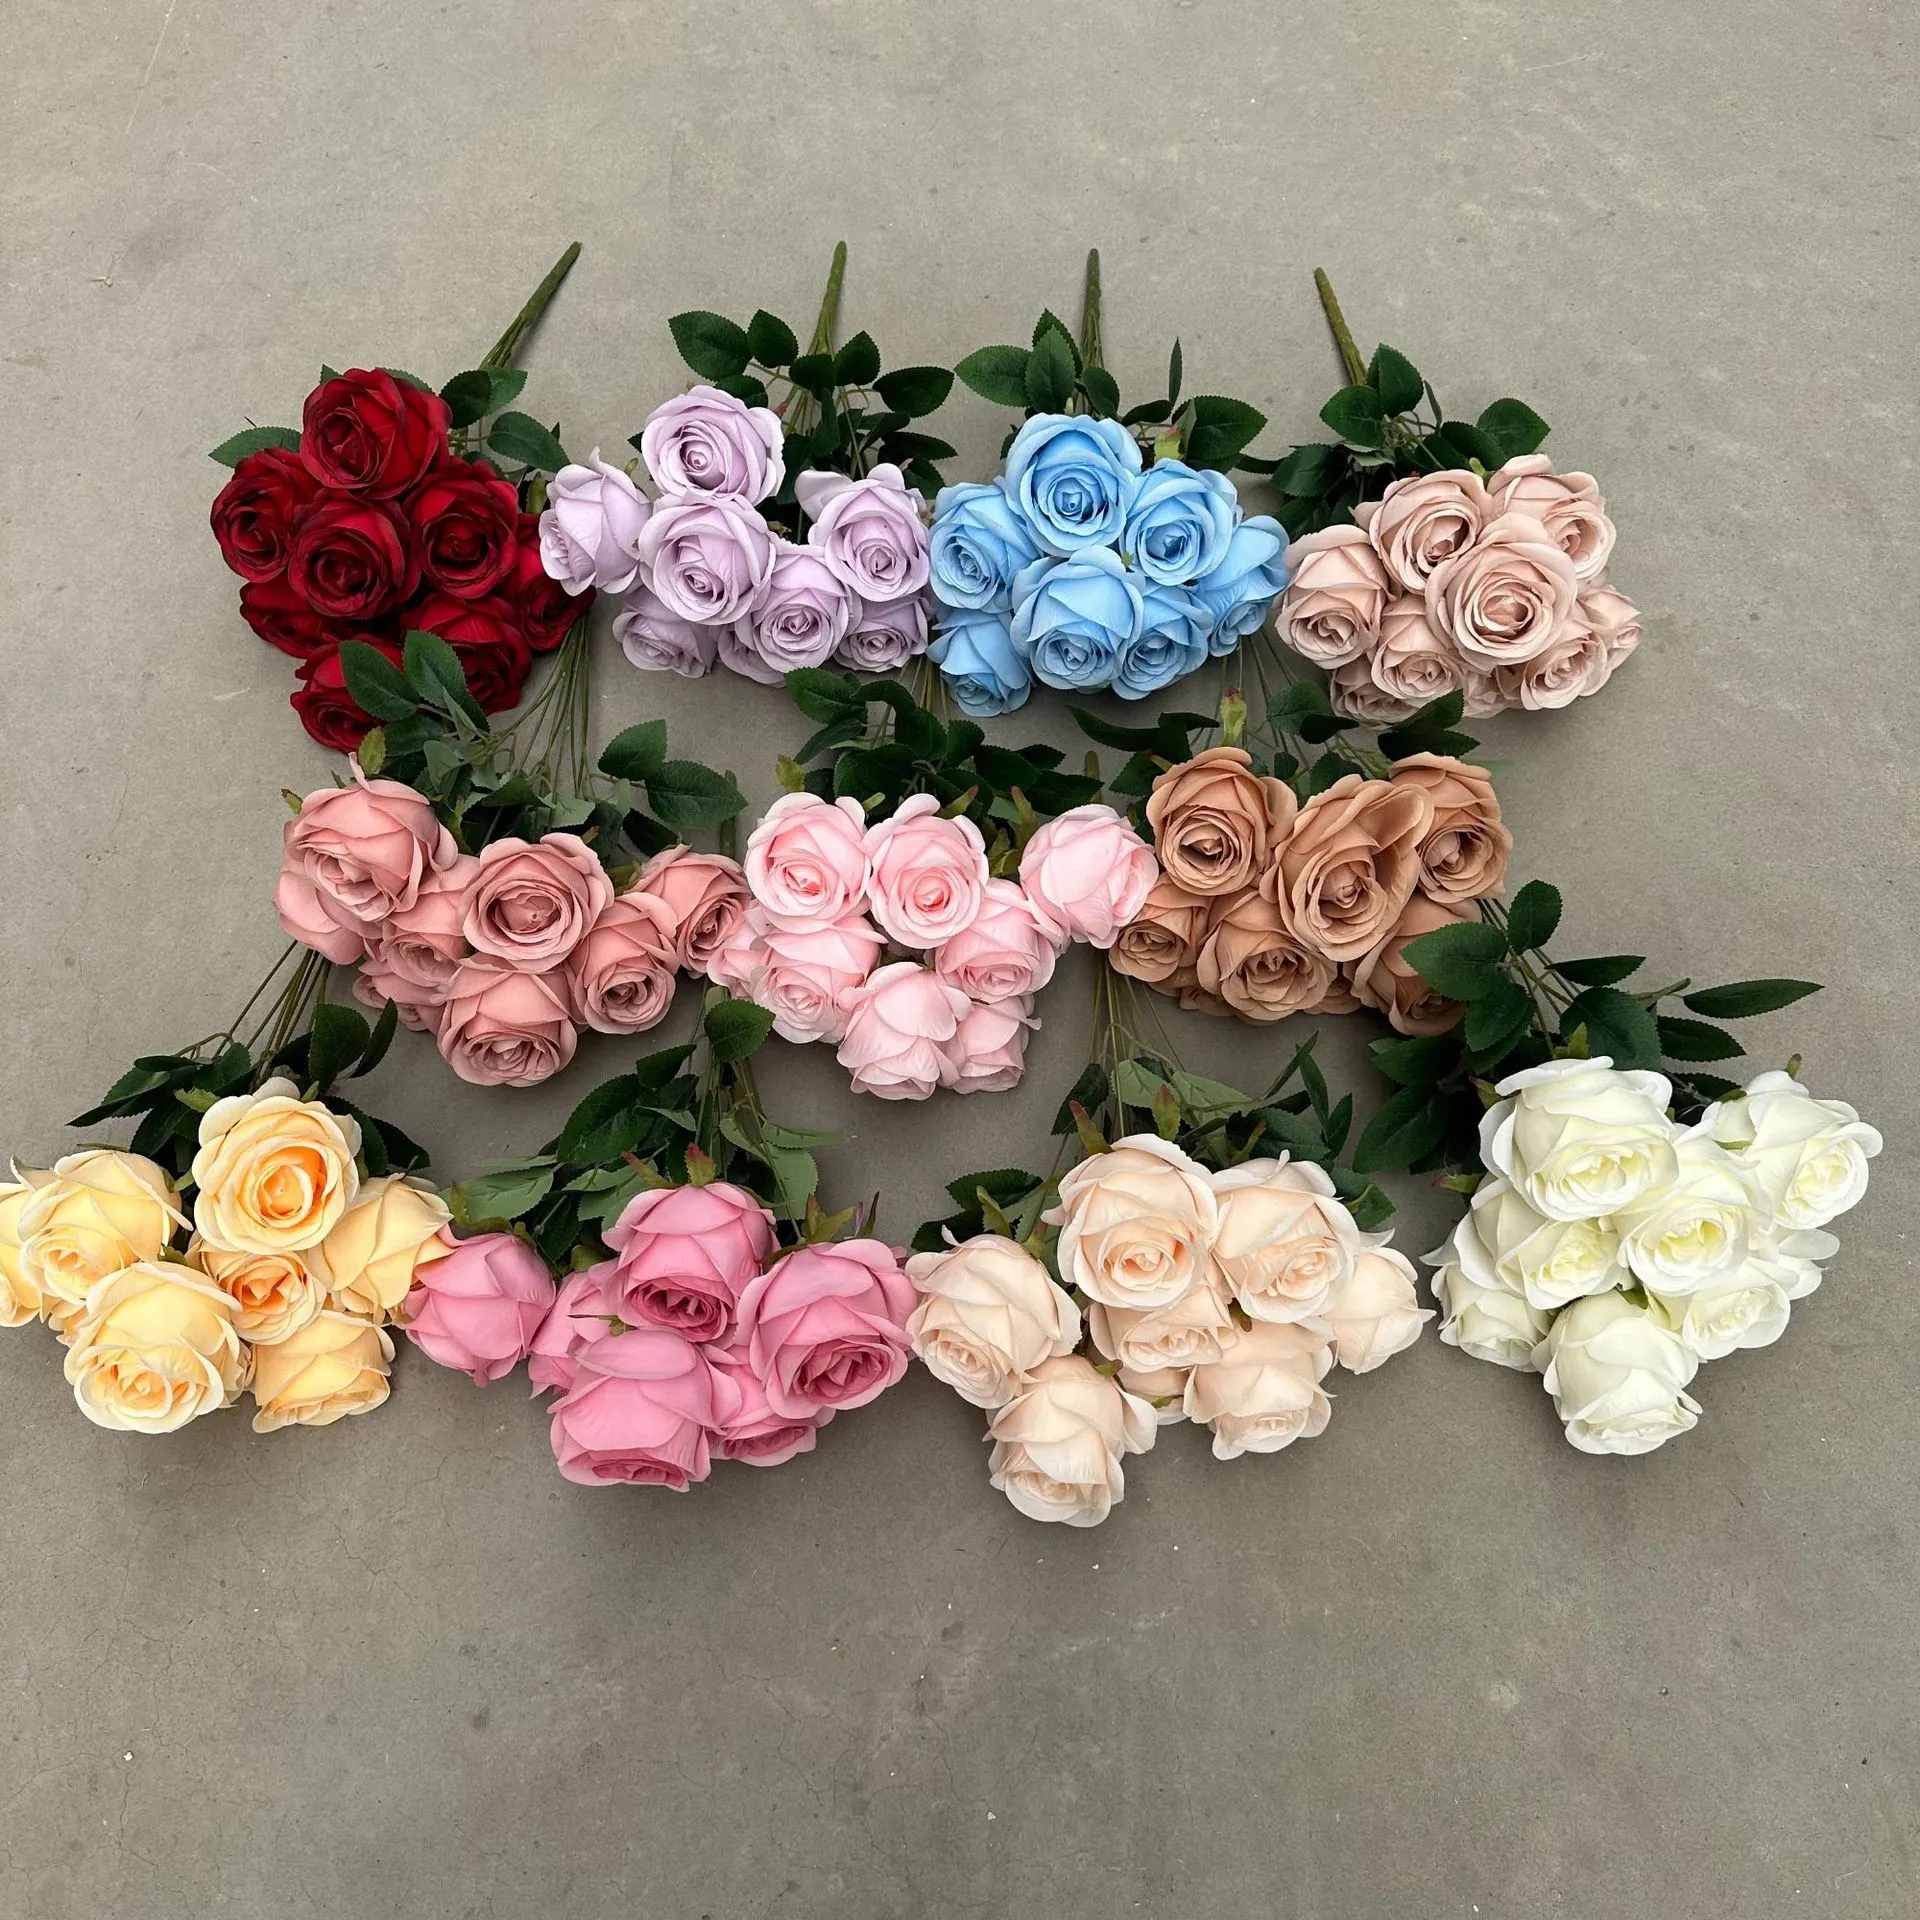 Sztuczne kwiaty bukiet róża do dekoracji domu i ślubów najlepsza jakość